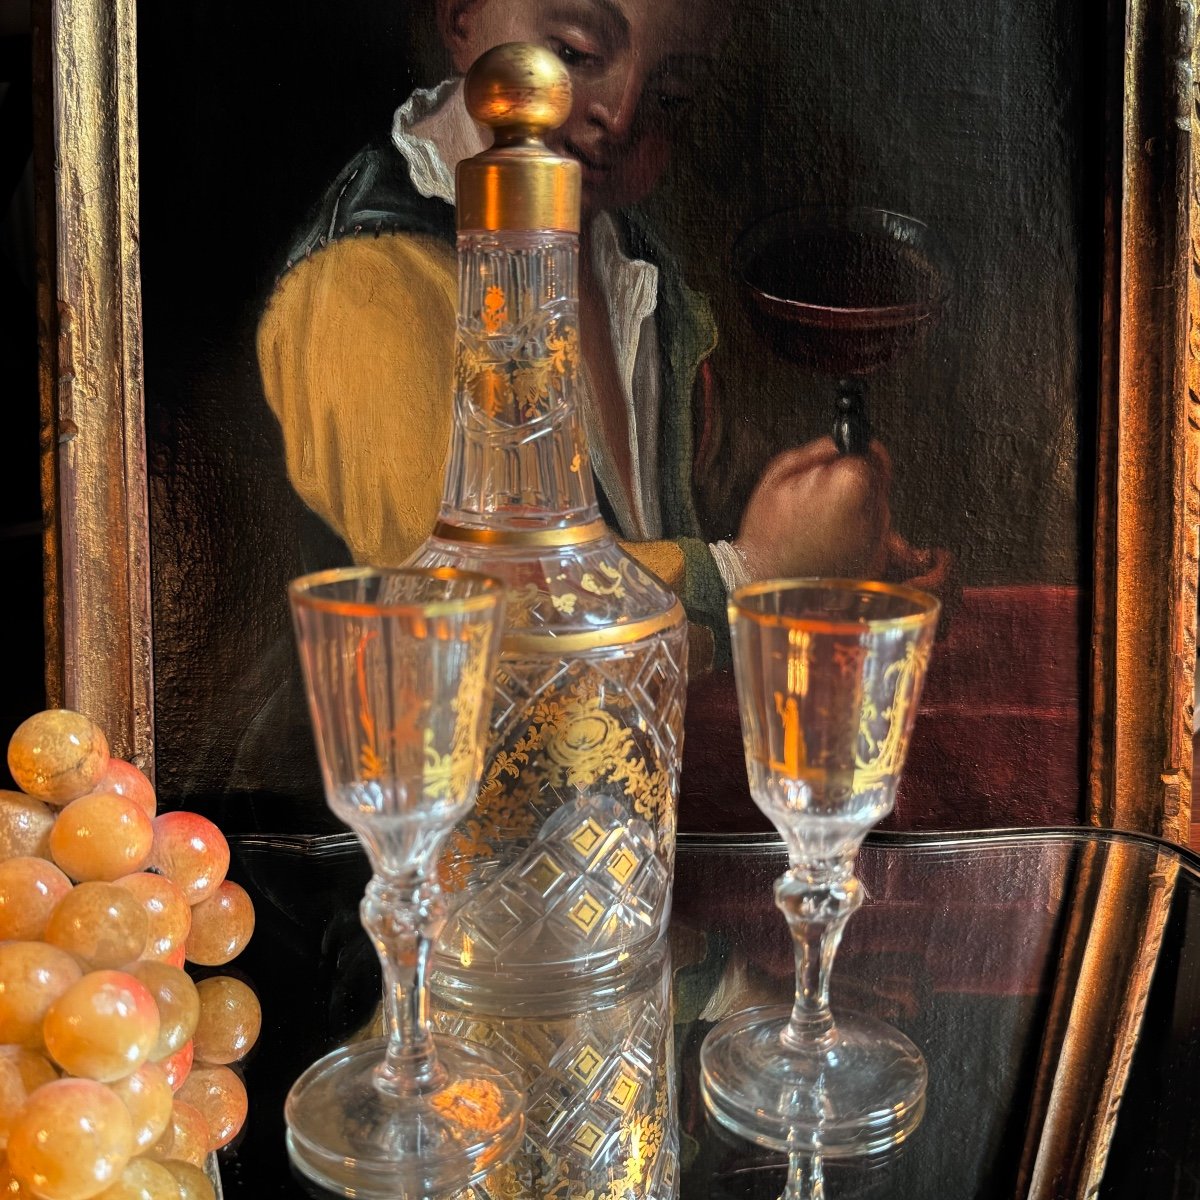 Carafe du XVIIIè, cristal taillé dorées deux verres, Louis XVI.